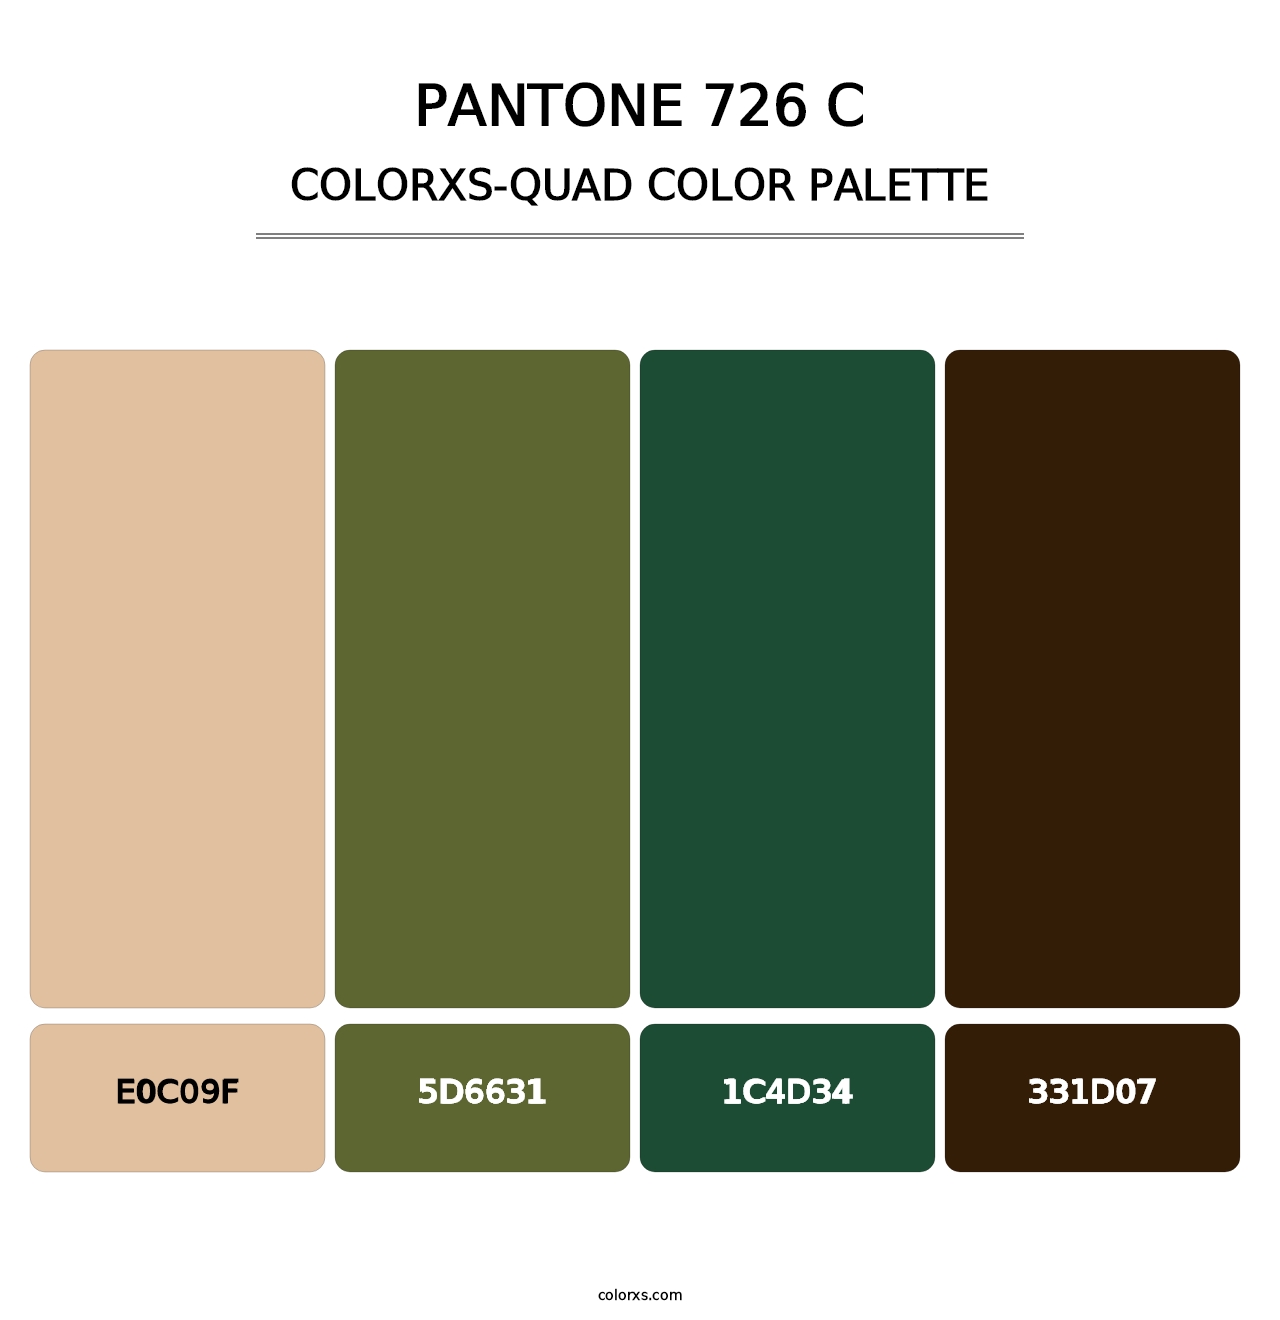 PANTONE 726 C - Colorxs Quad Palette